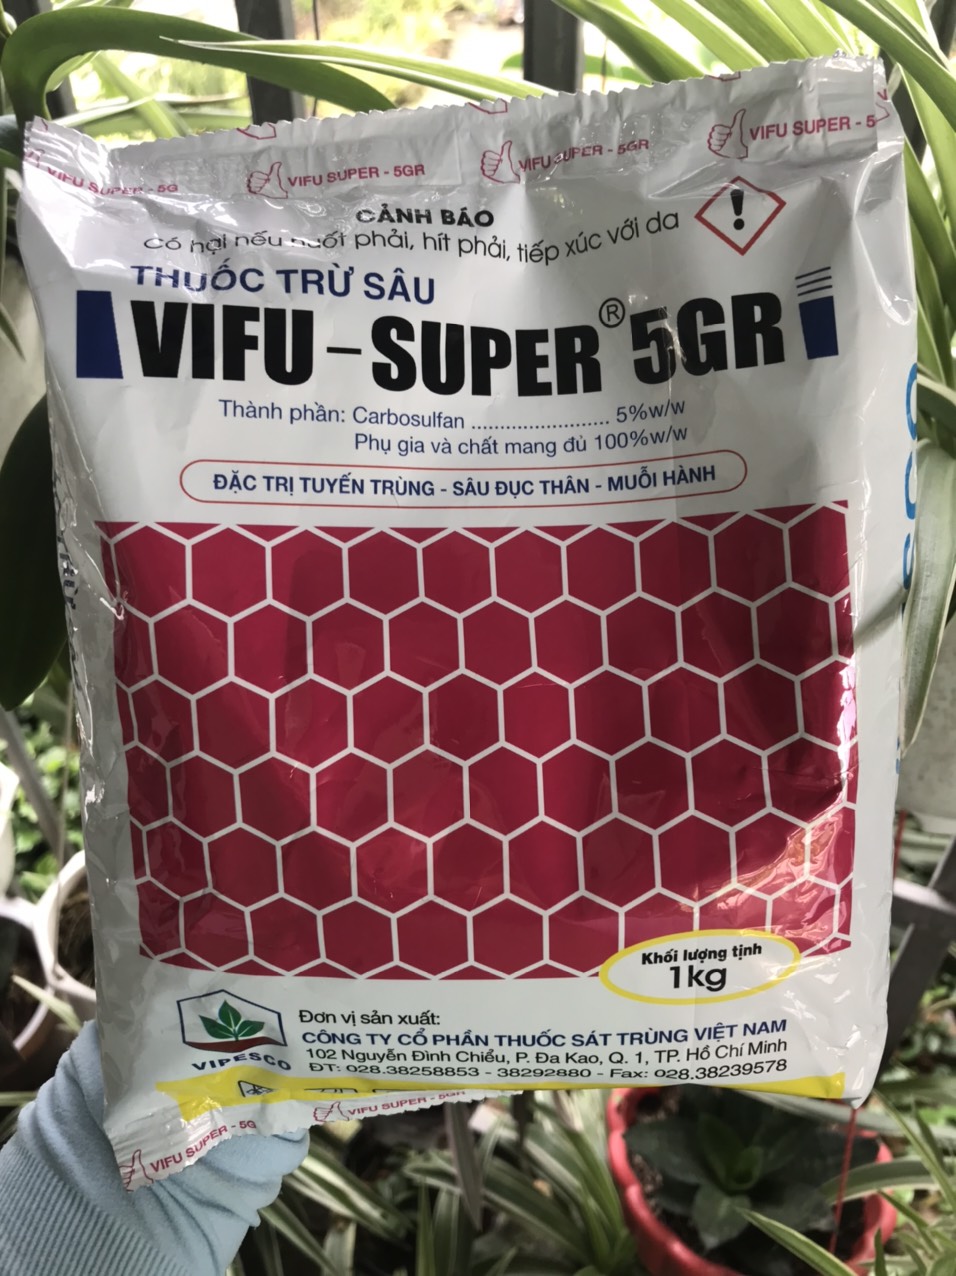 Vifu Super 5GR 1kg Diệt tuyến trùng Sâu đục thân Muỗi hành